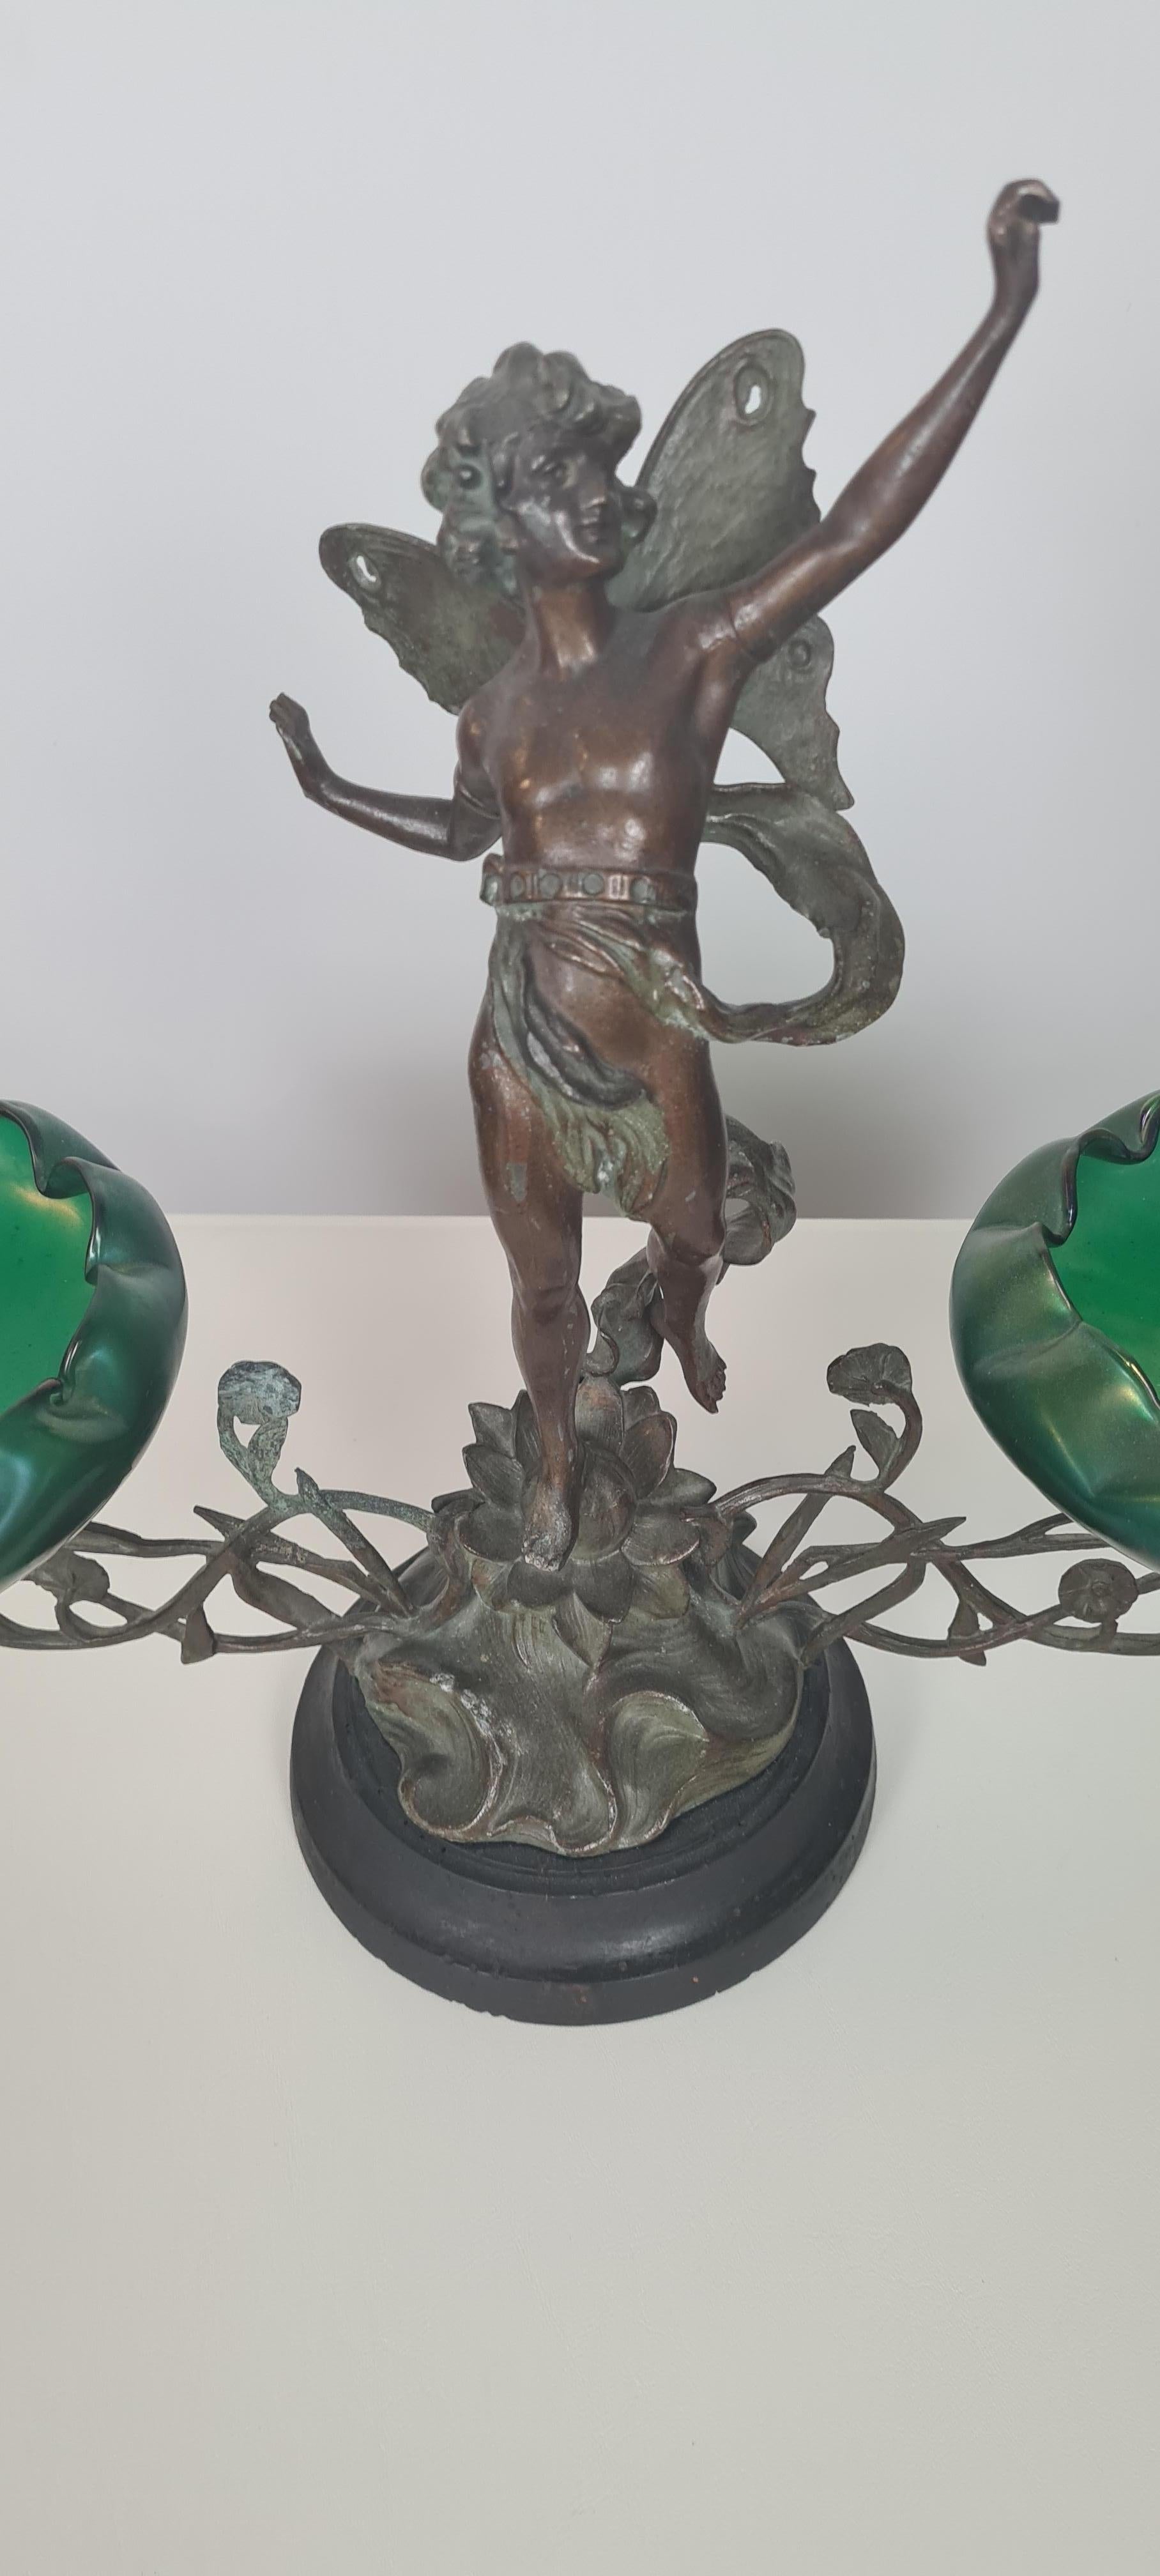 Svuotatasche liberty dei primi del 900′, composto da una scultura di fanciullo alato in bronzo e due coppe in vetro verde, lavorato a mano.

Notare la maestria e bravura nel dare vita e movimento al fanciullo.

La scultura-oggetto si trova in